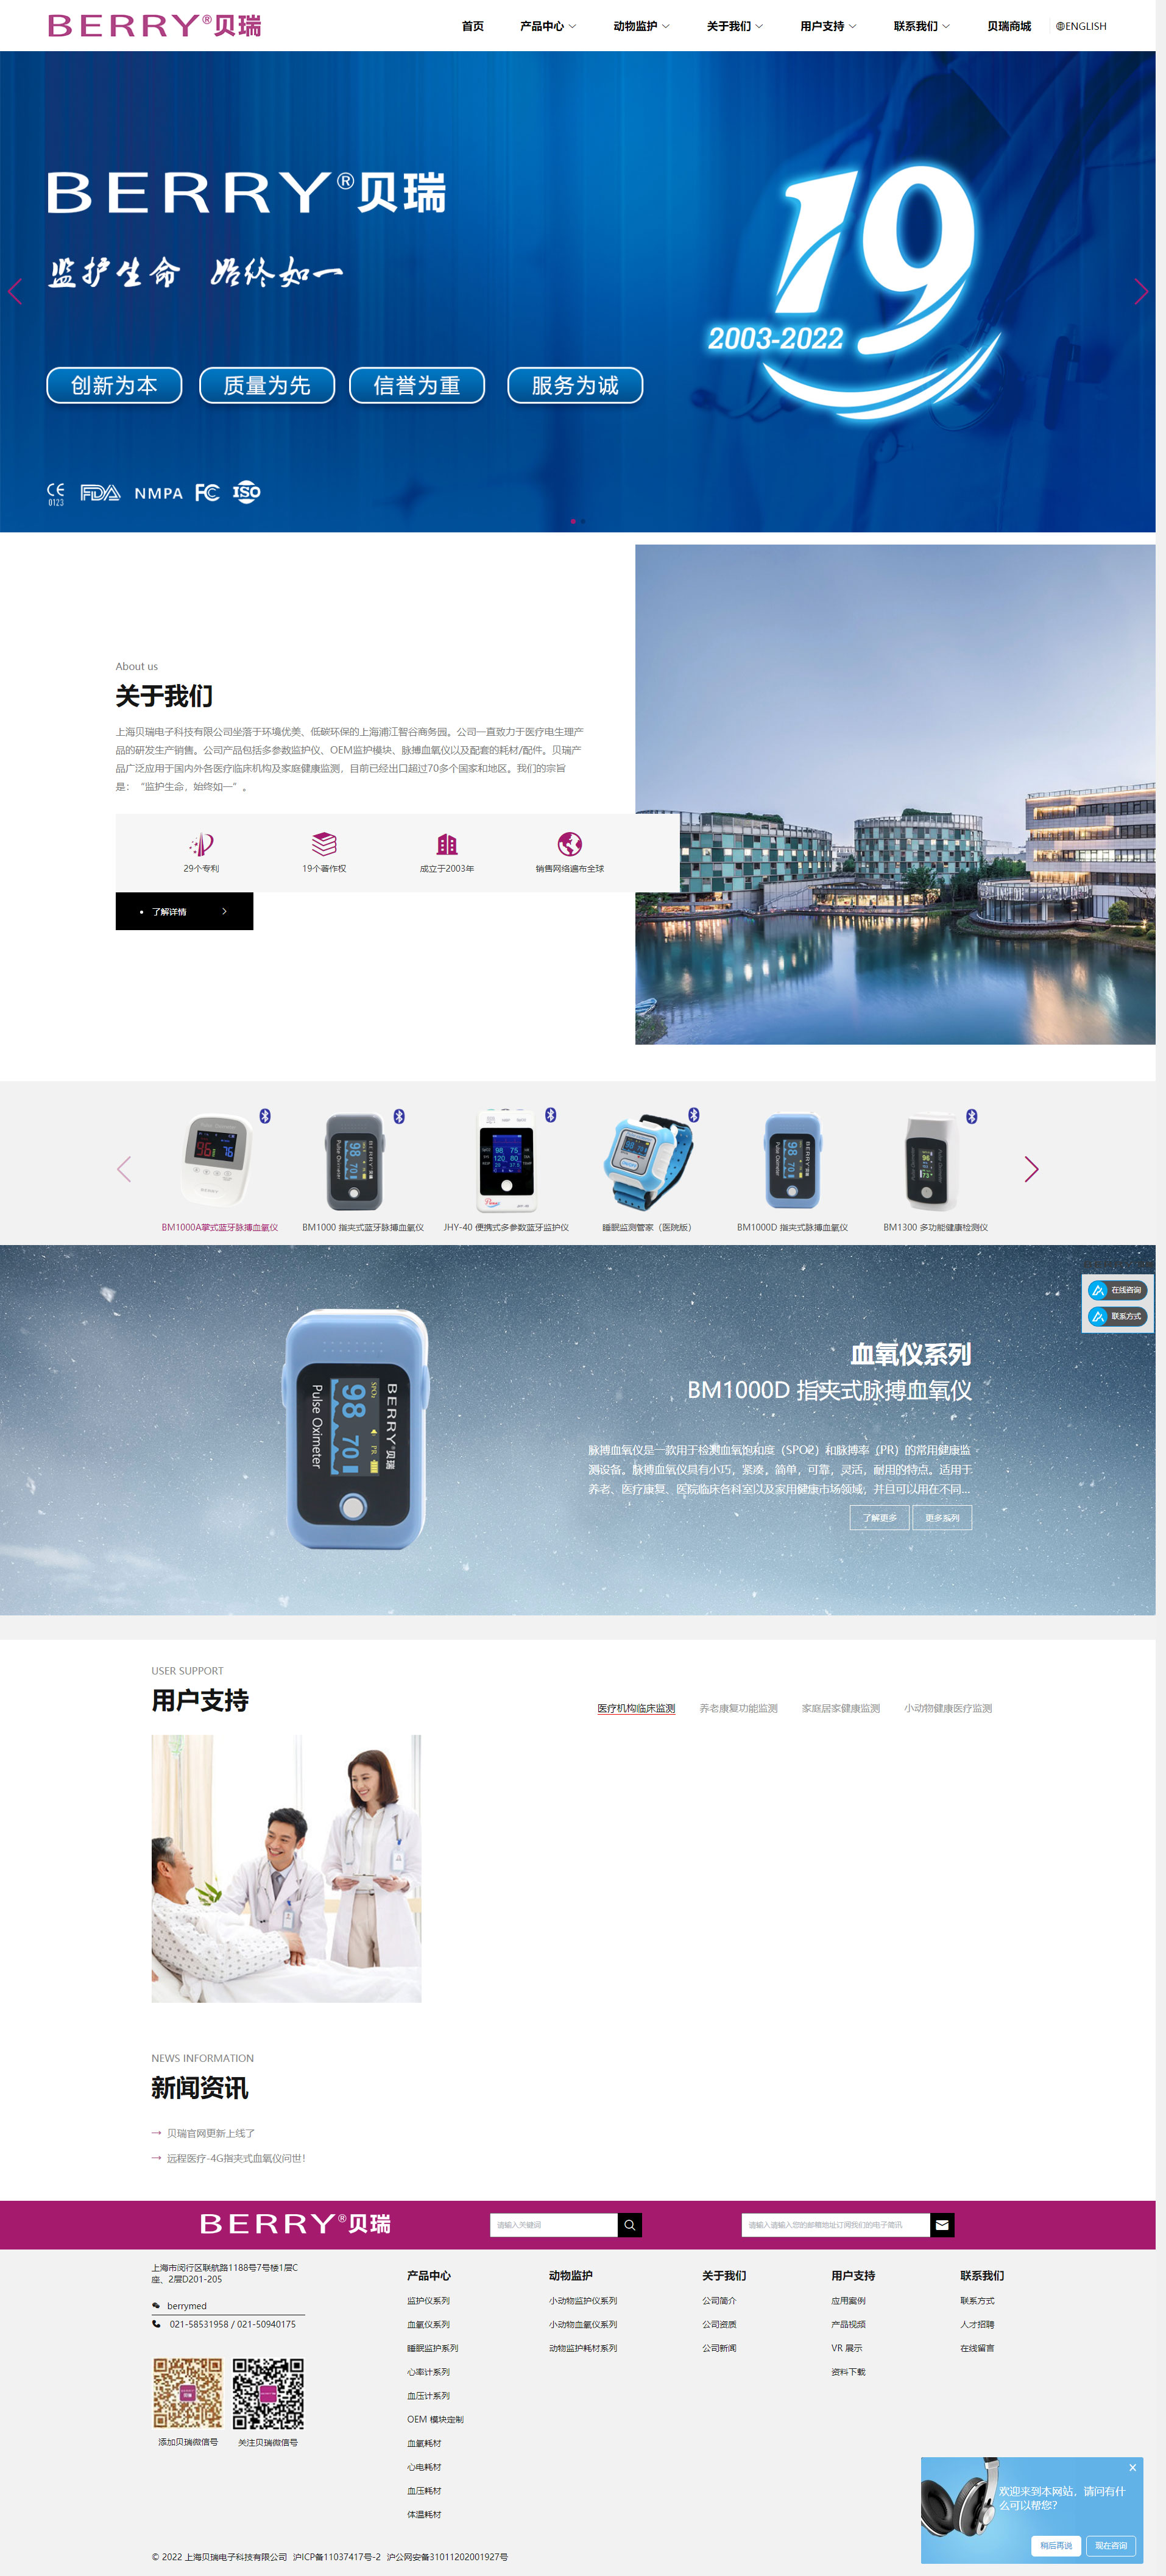 上海贝瑞电子科技有限公司.jpg